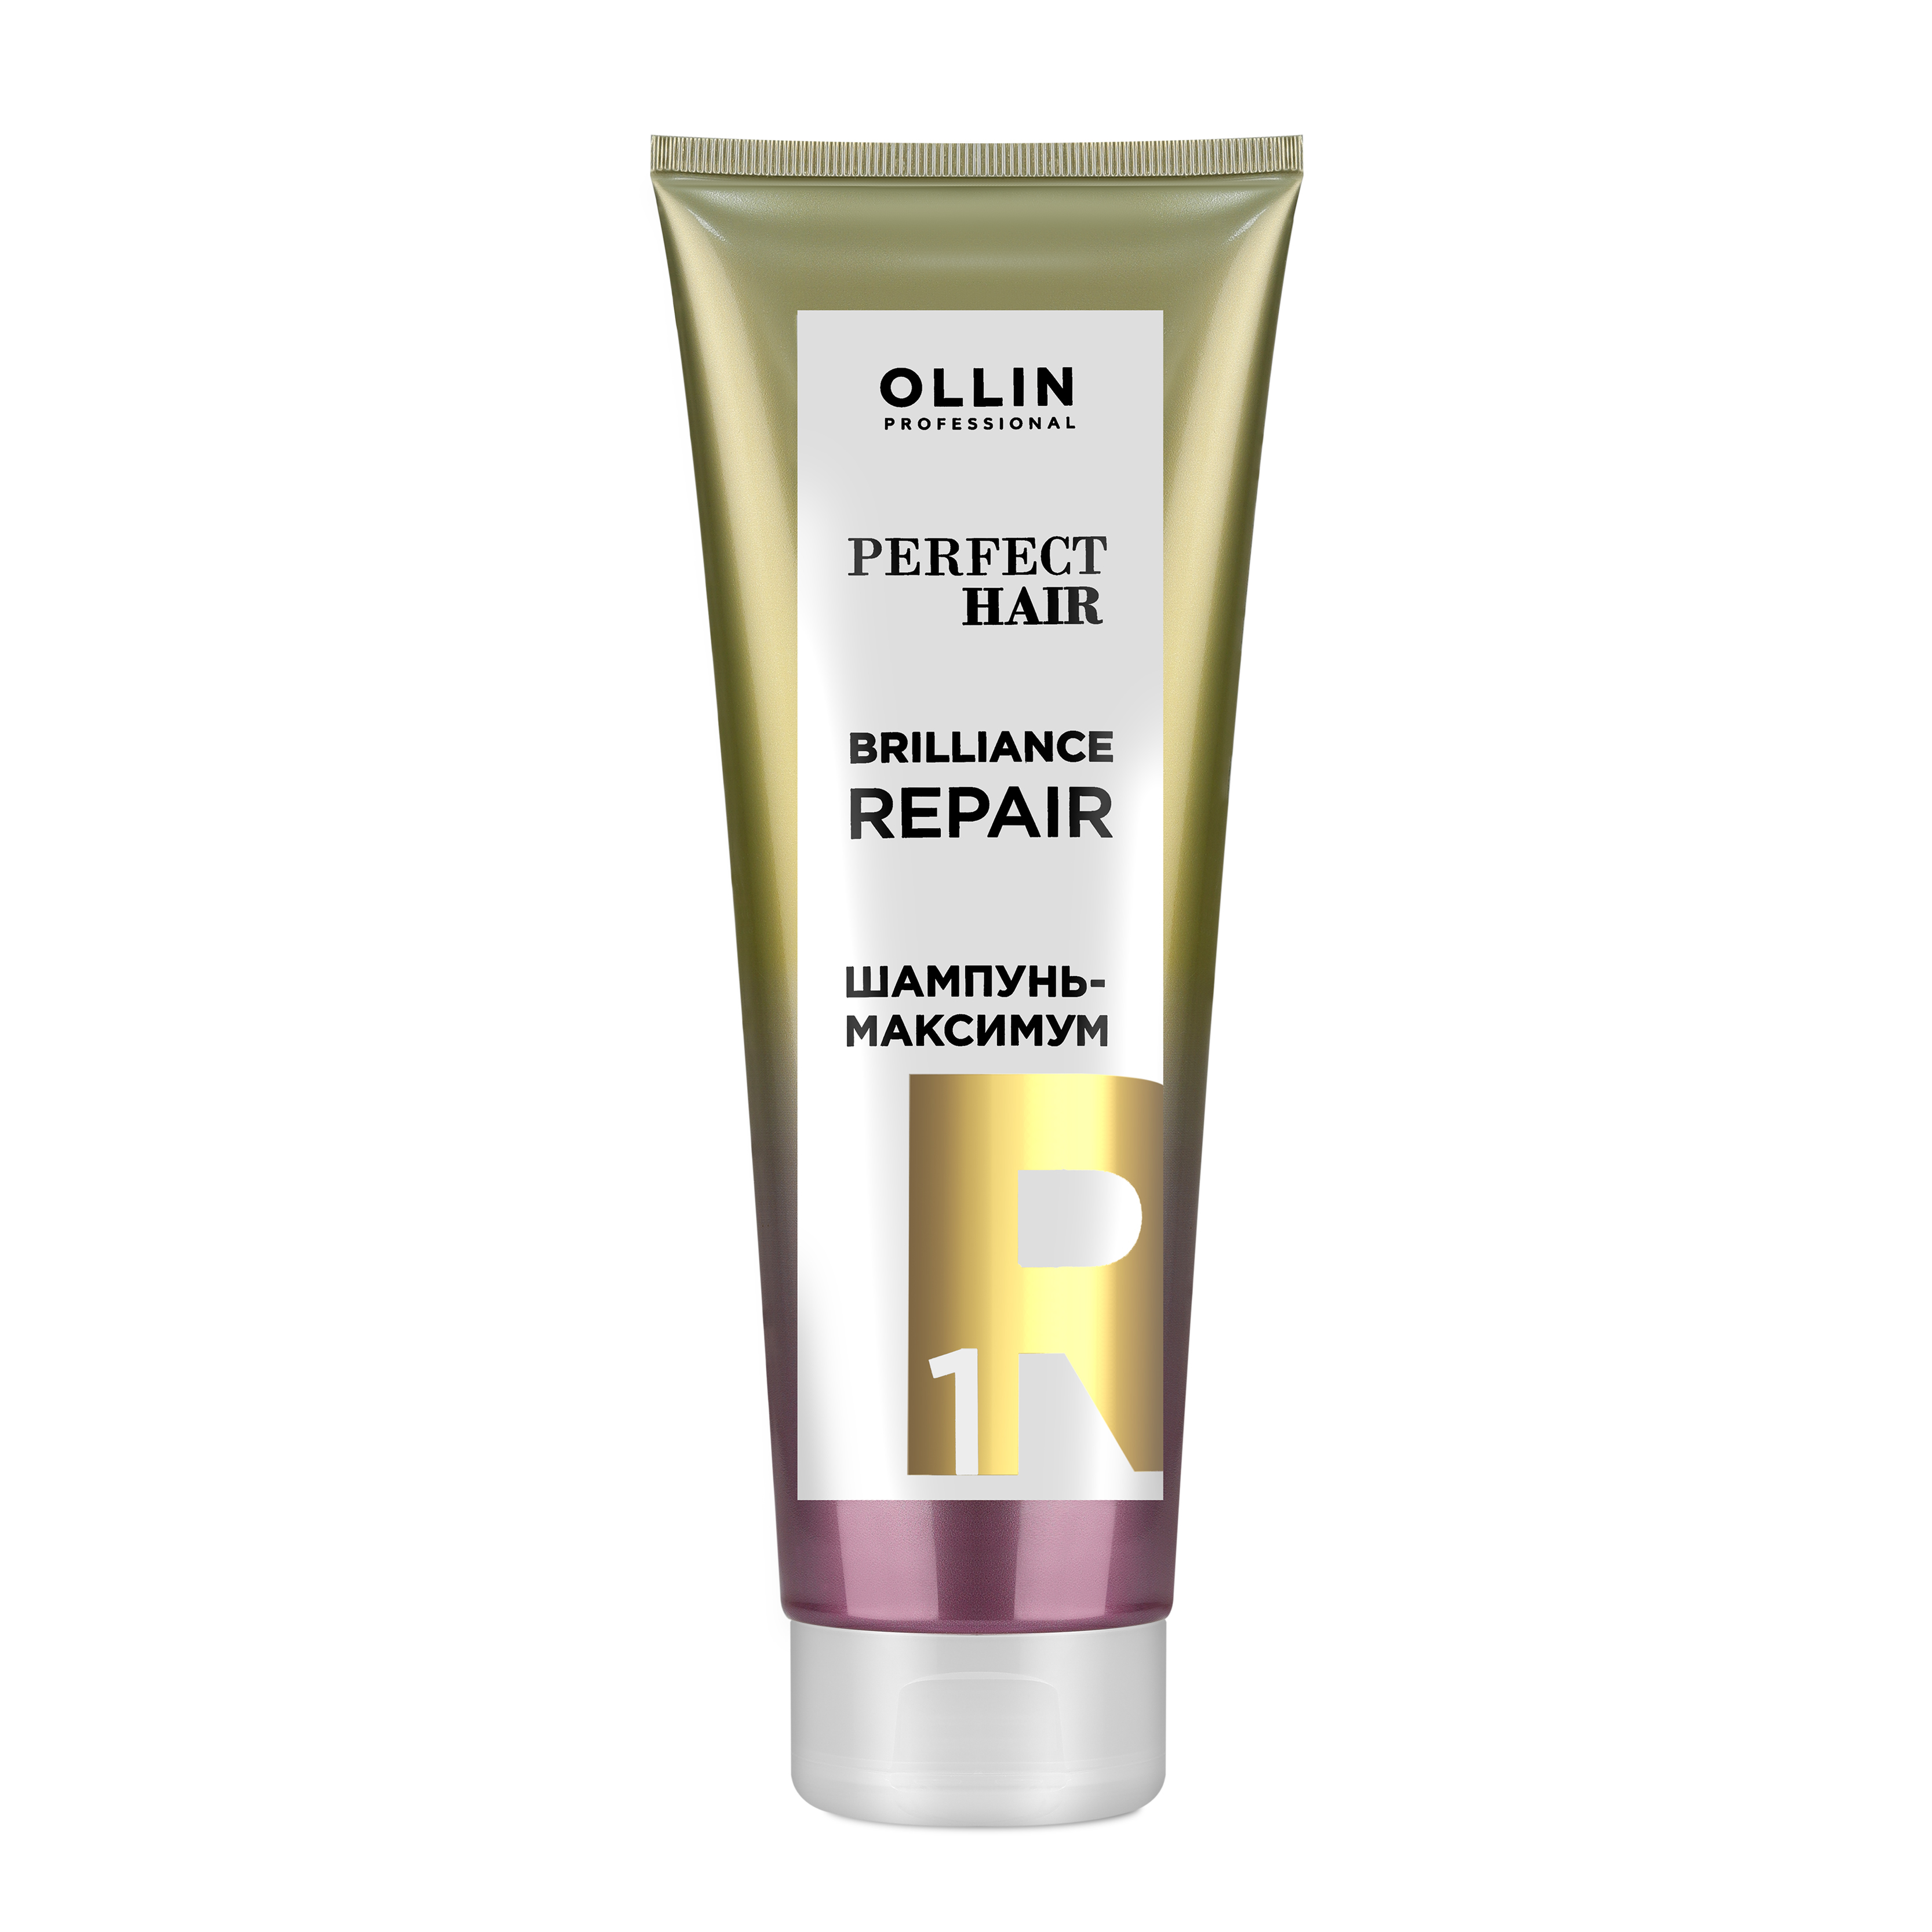 Шампунь-максимум Ollin Professional Perfect Hair Bril шампунь максимум подготовительный этап perfect hair brilliance repair 1